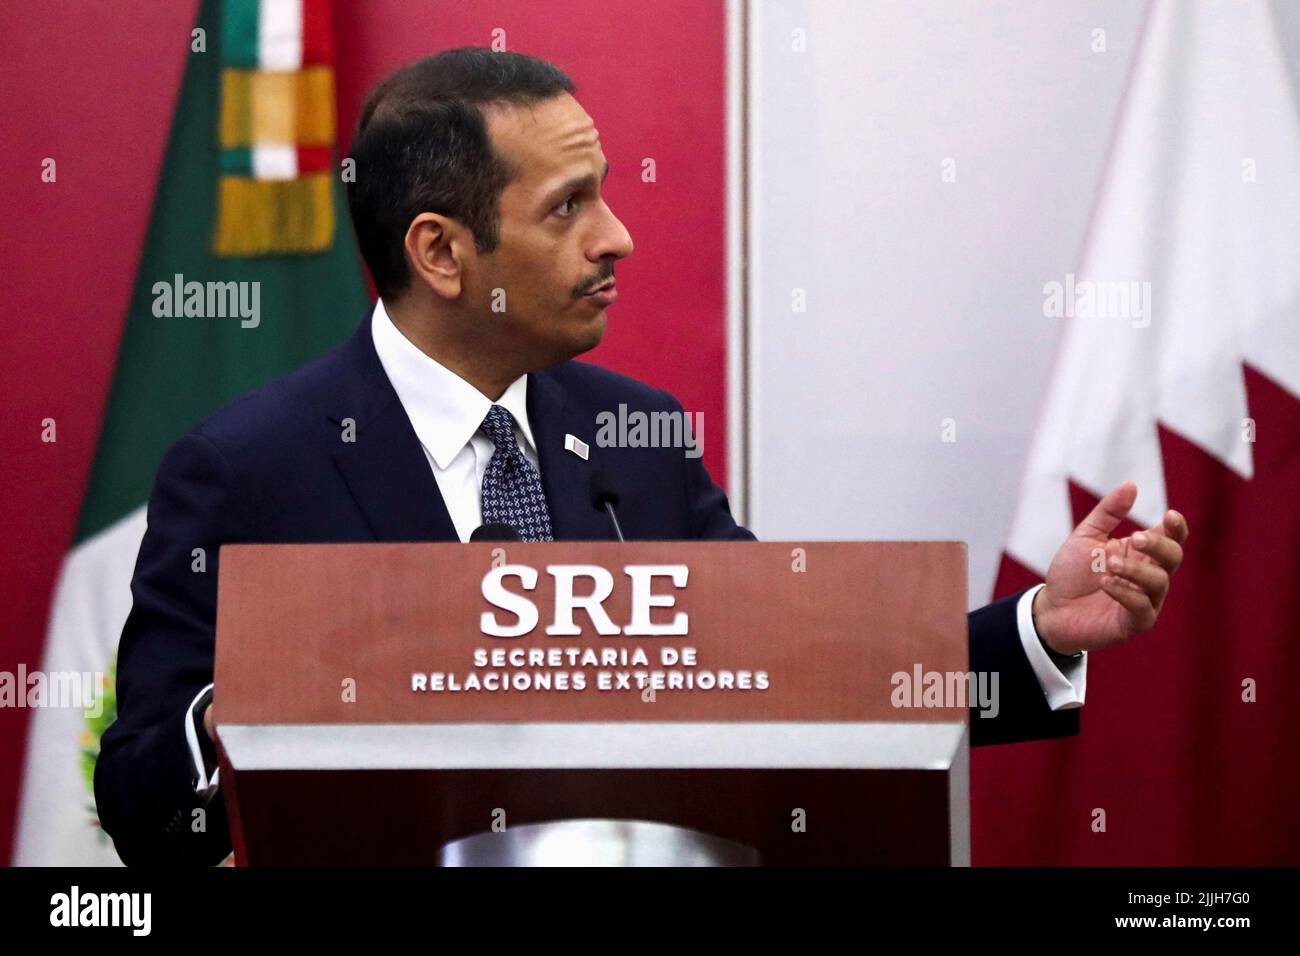 El ministro de Relaciones Exteriores de Qatar, Mohammed bin Abdulrahman bin Jassim Al Than, se dirige a los medios de comunicación en el edificio del Ministerio de Relaciones Exteriores (SRE) en la Ciudad de México, México, el 26 de julio de 2022. REUTERS/Edgard Garrido Foto de stock